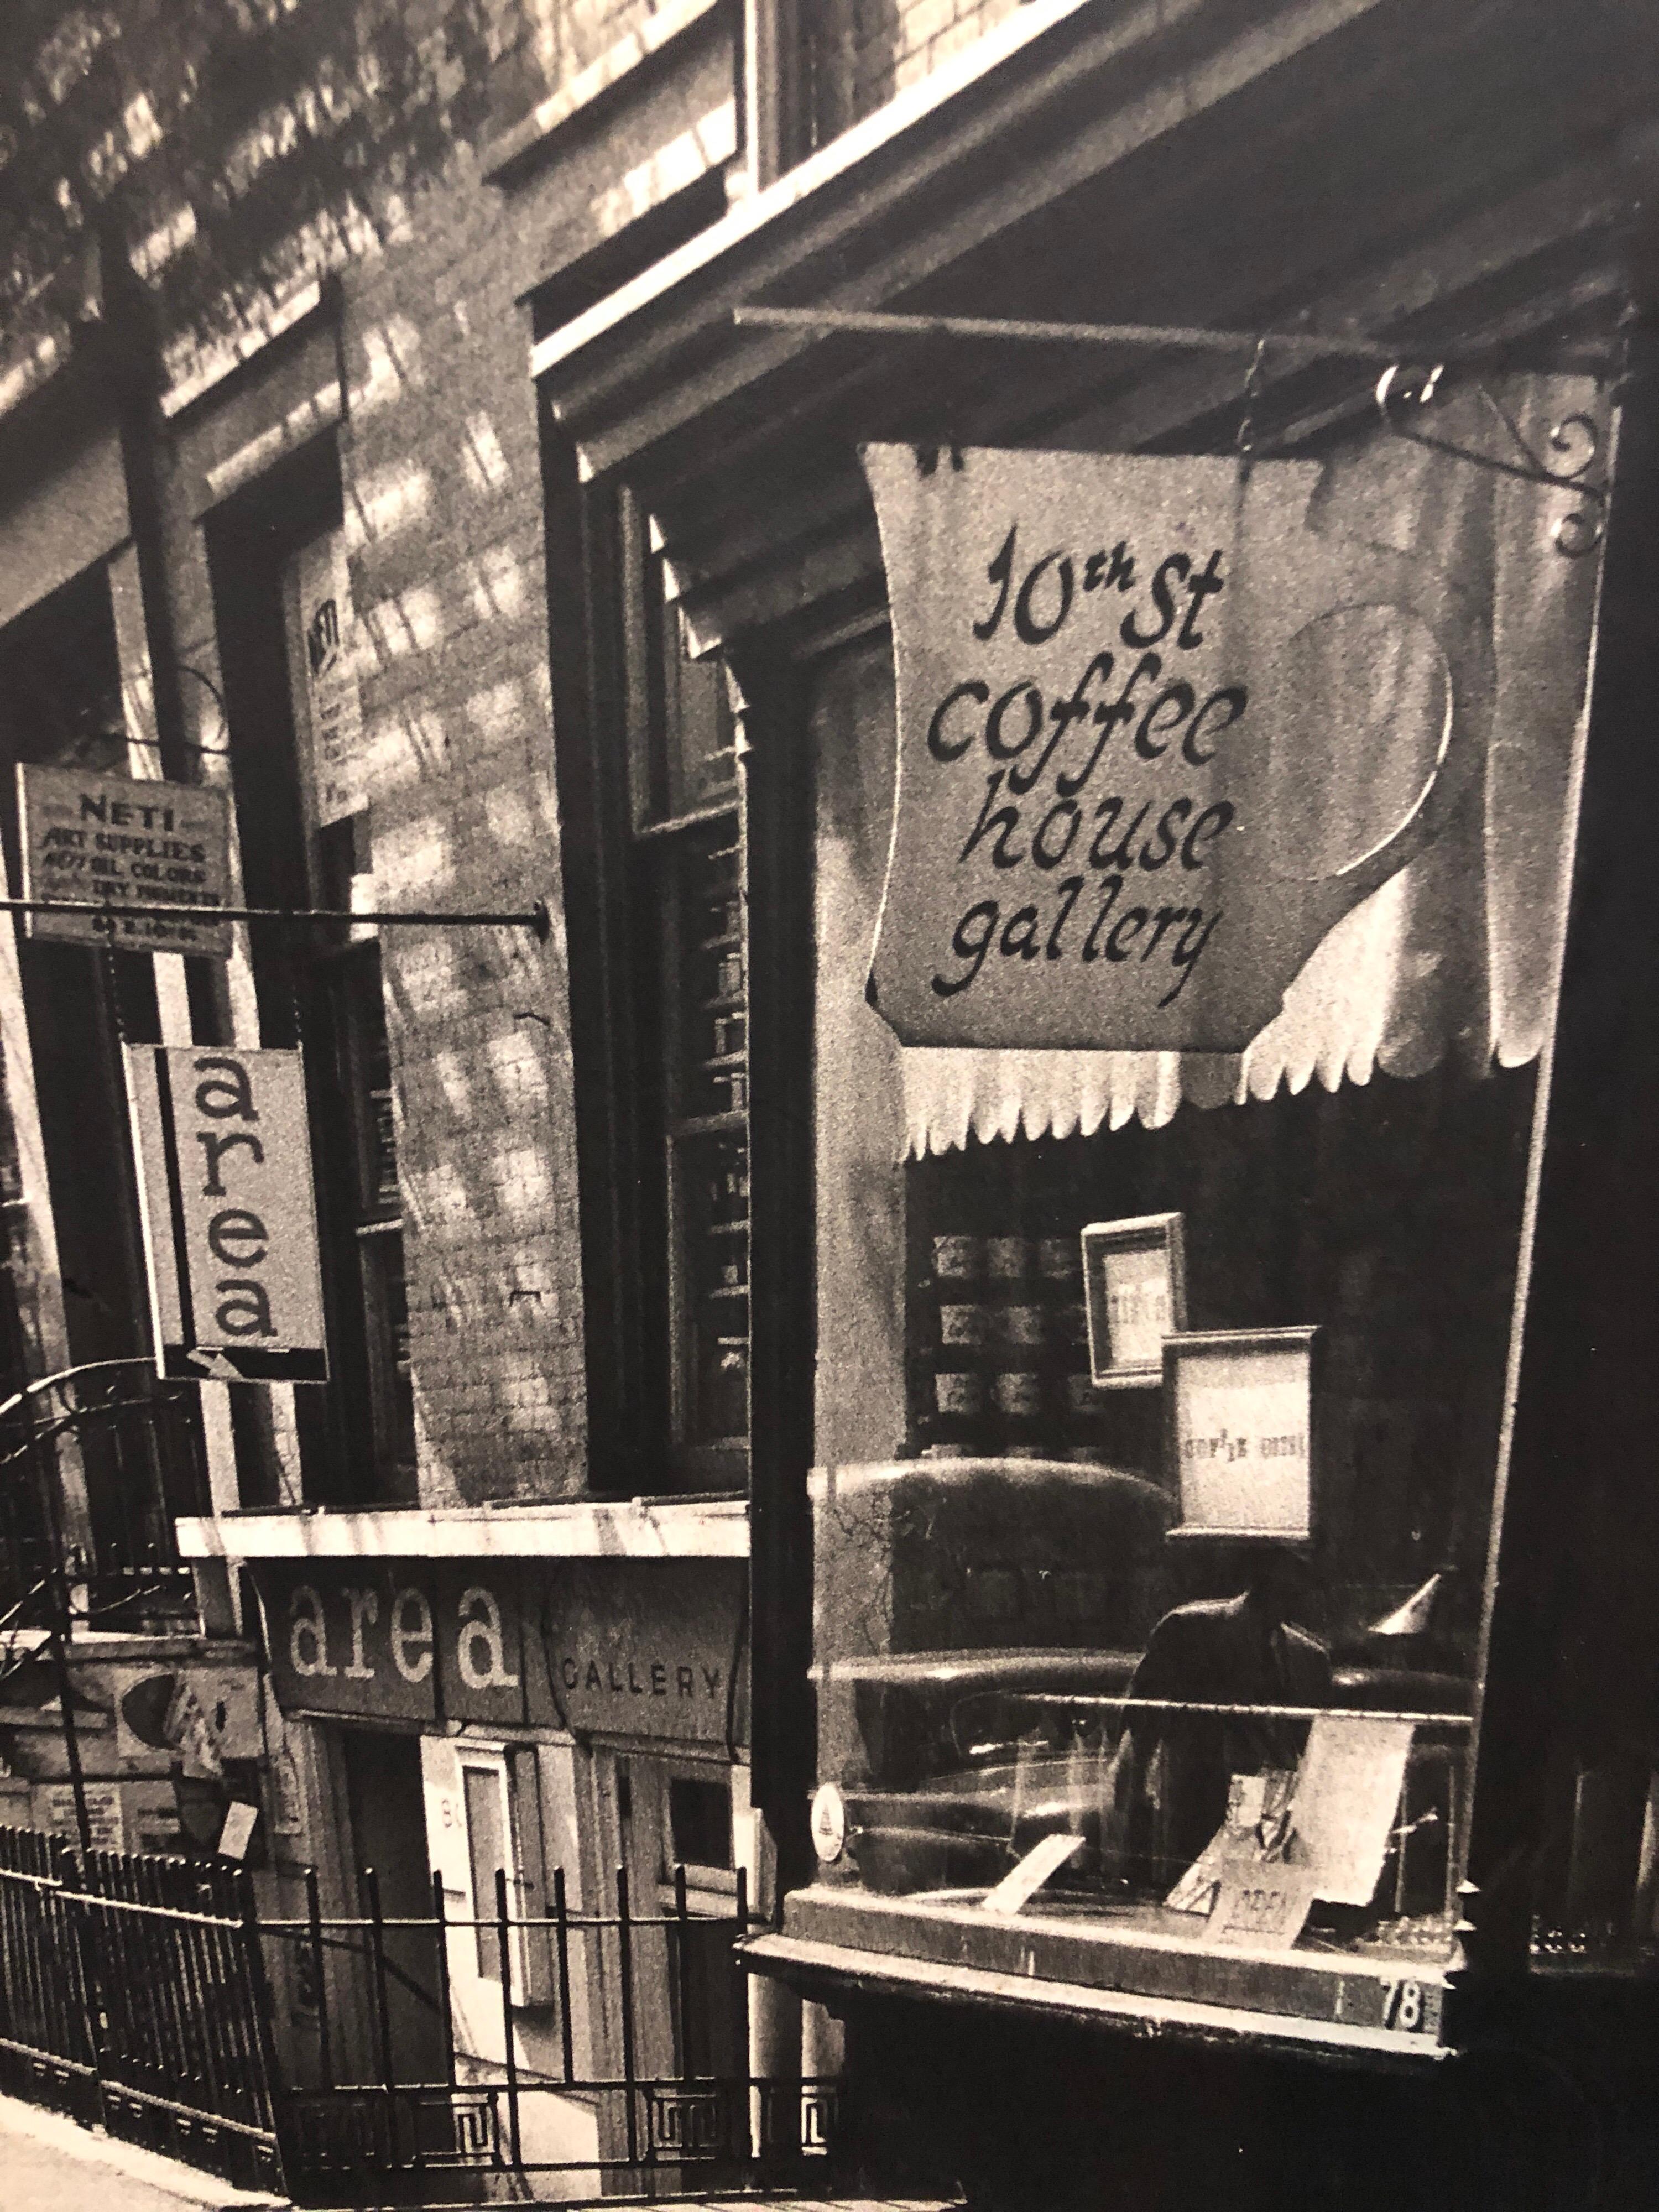 Eine seltene Schwarz-Weiß-Fotografie der berühmten 10th Street Coffee House Gallery in New York, die in den 1960er und 70er Jahren als Zentrum der Kunst-, Poesie- und Musikszene diente und Künstler wie Andy Warhol, John Chamberlin und Donald Judd